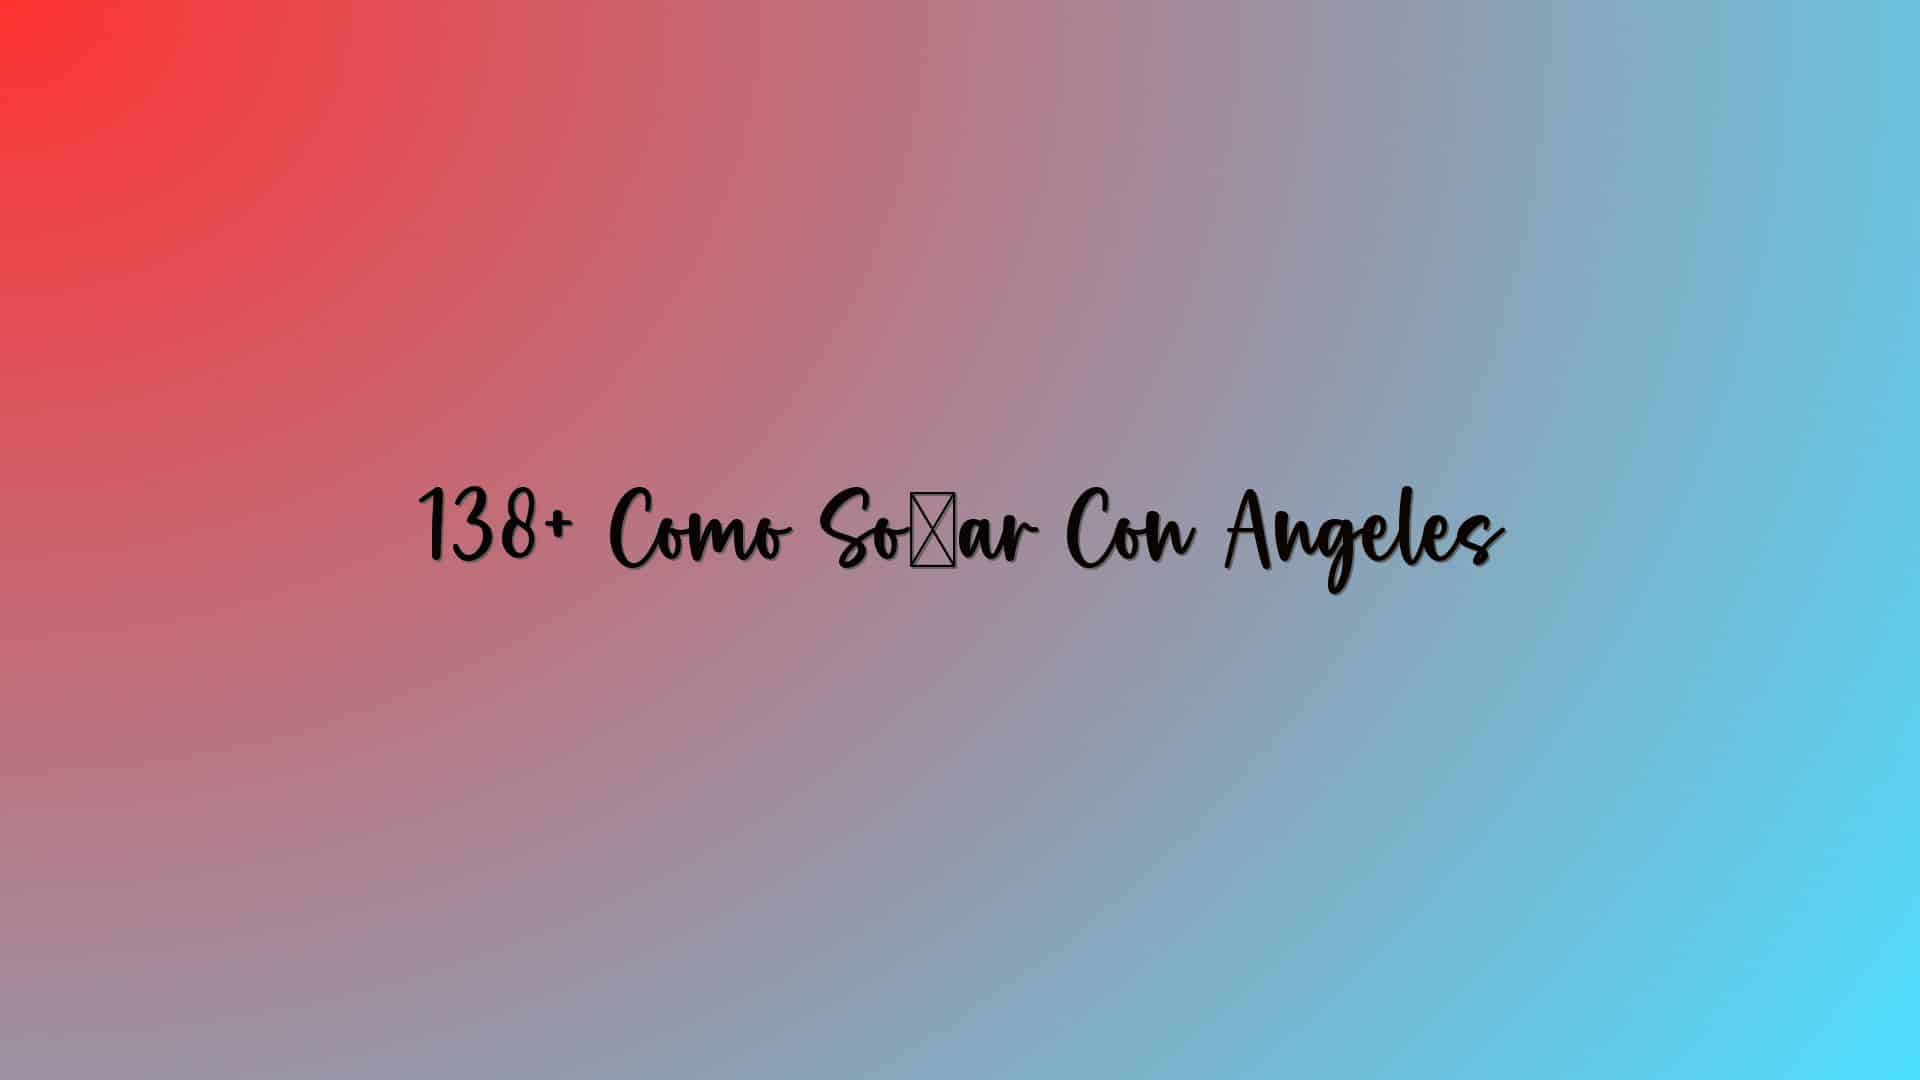 138+ Como Soñar Con Angeles